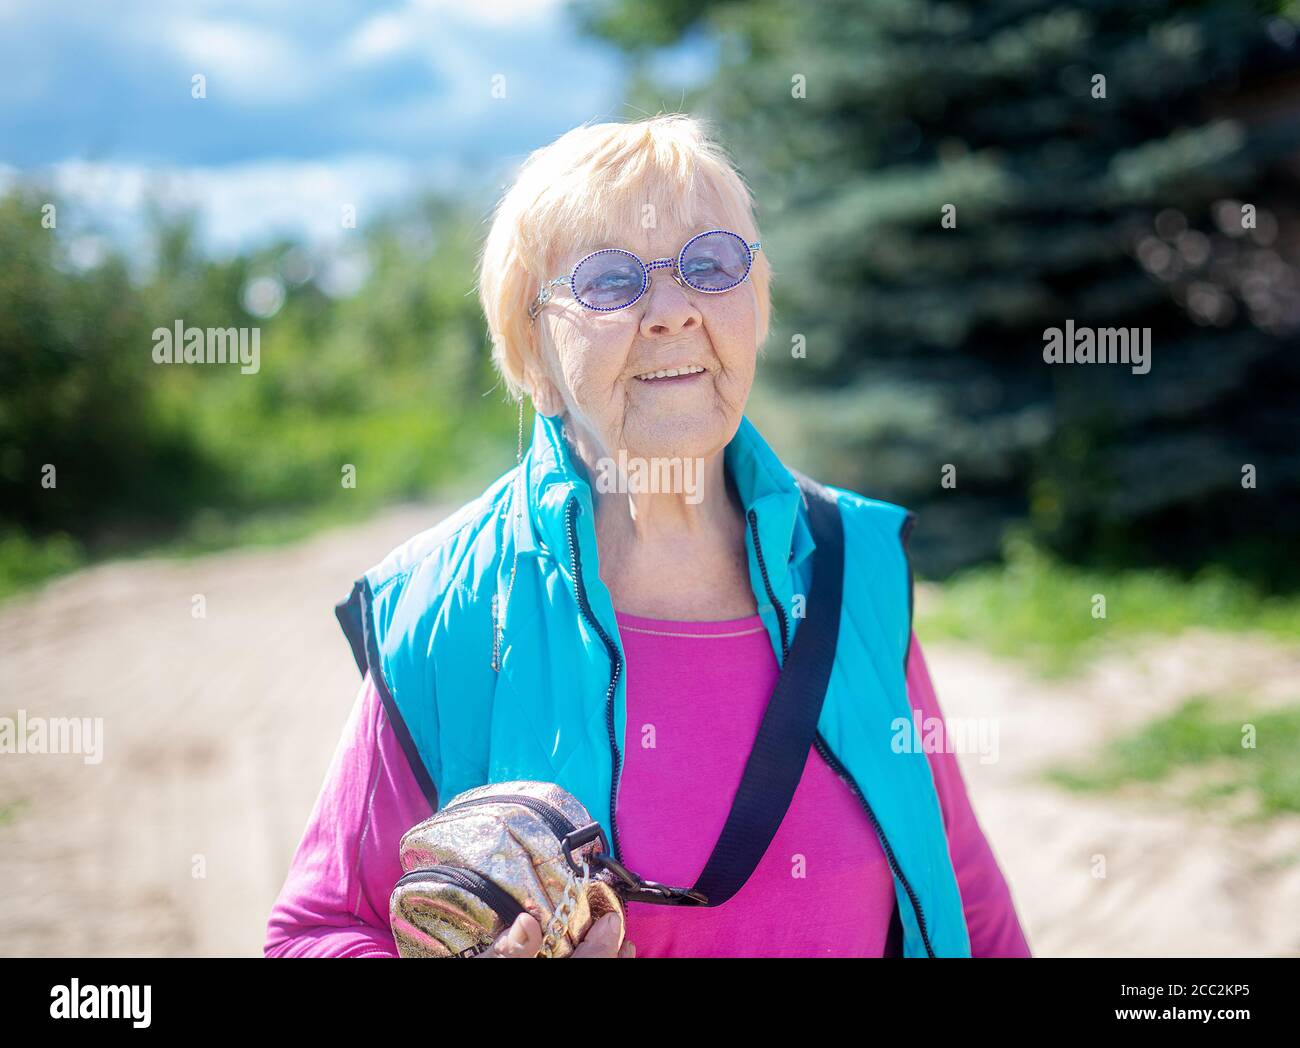 Une grand-mère de 90 ans heureuse et tendance avec des cheveux gris, des lunettes de soleil et un sourire dans la nature lors d'un soleil d'été. Banque D'Images